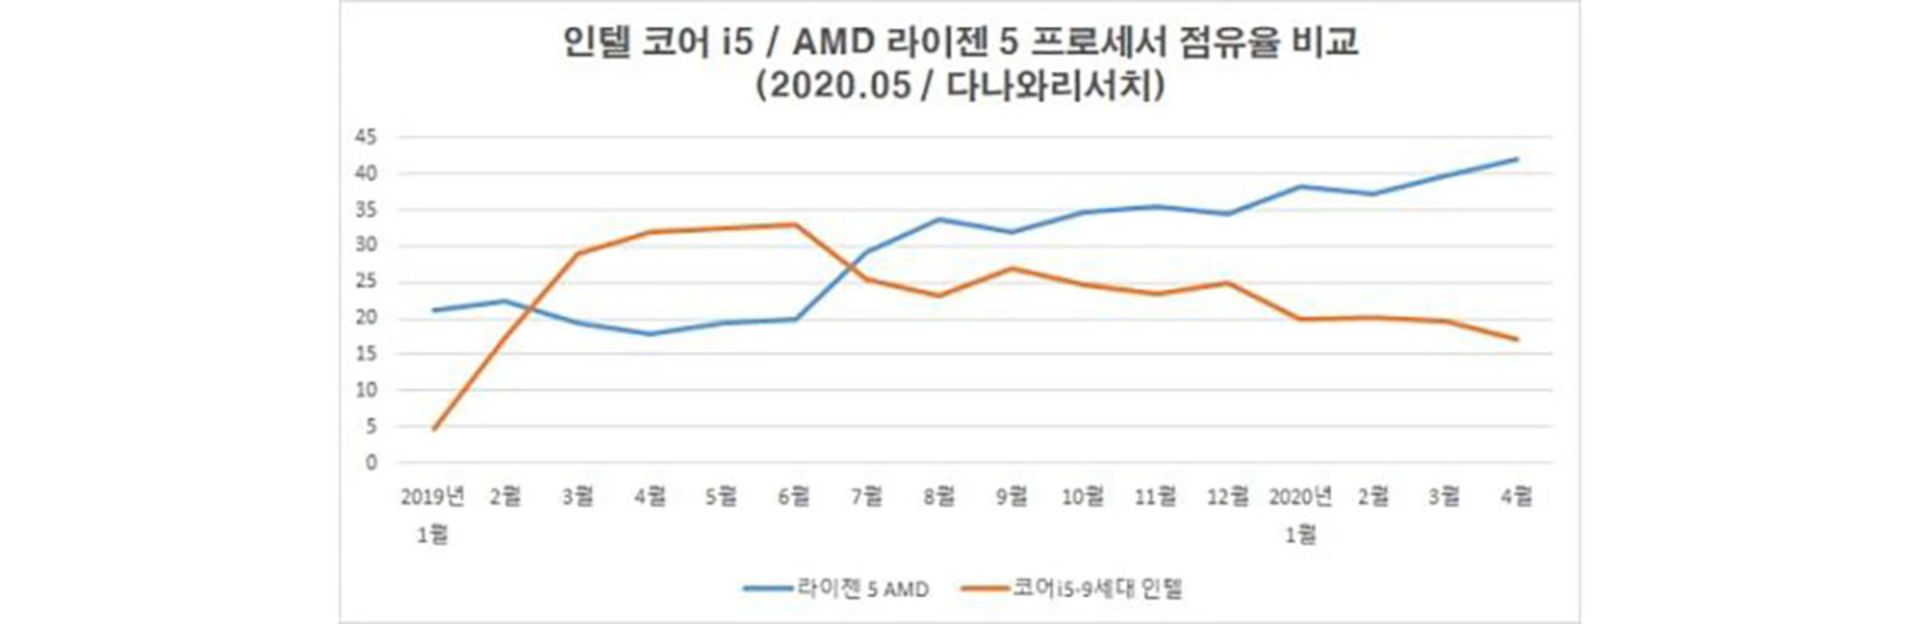 سهم AMD در بازار کره جنوبی